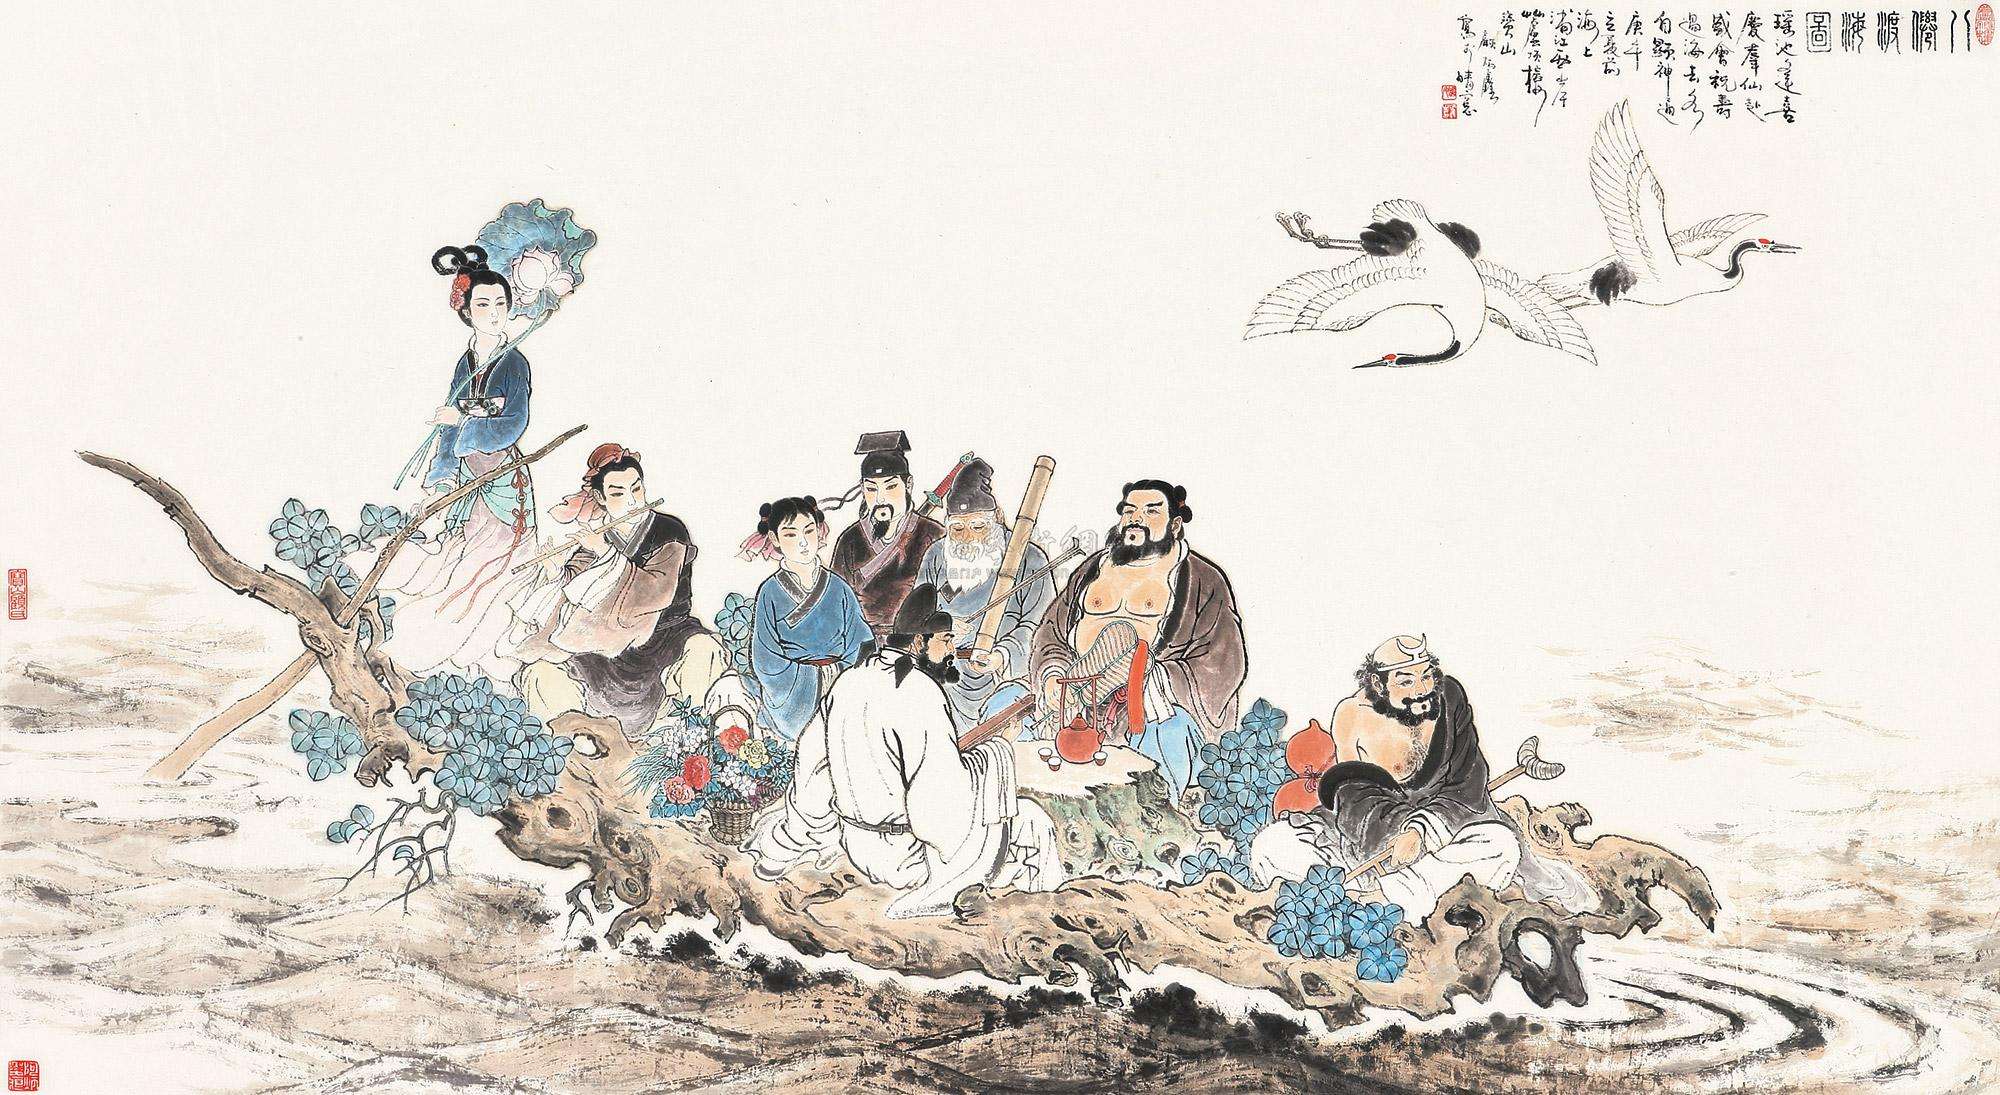 Ba Xian: Mythical Taoist Figures